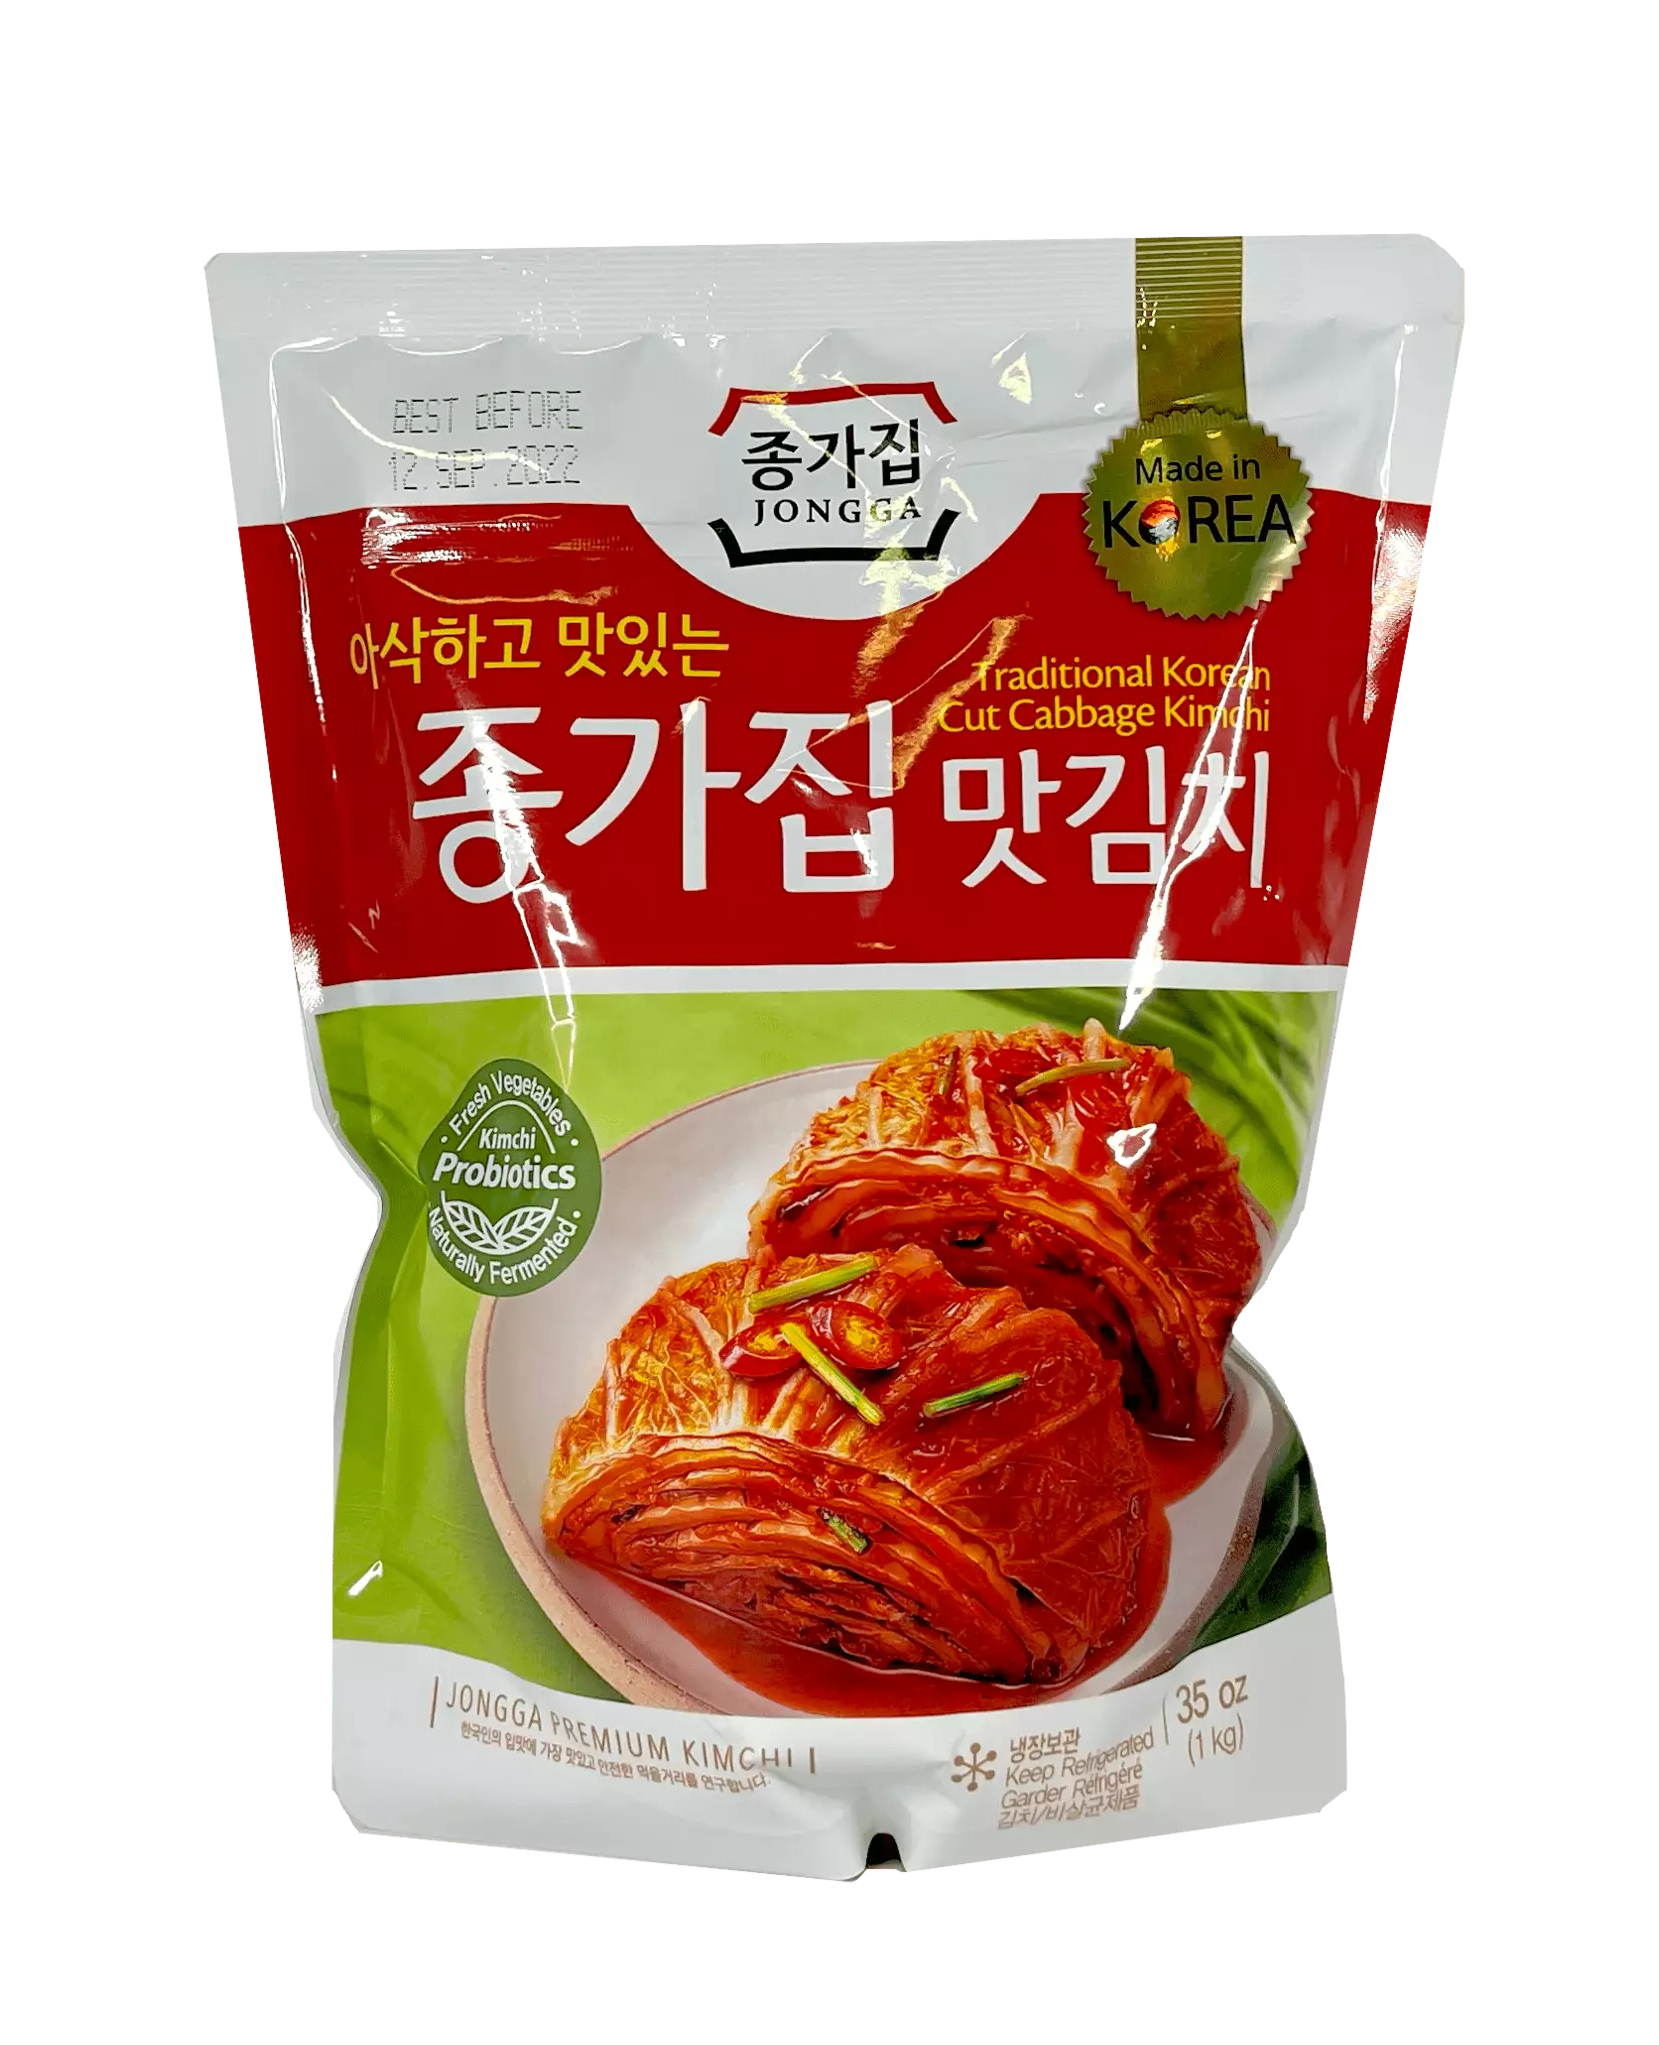 大白菜泡菜 1000g Chongga 韩国